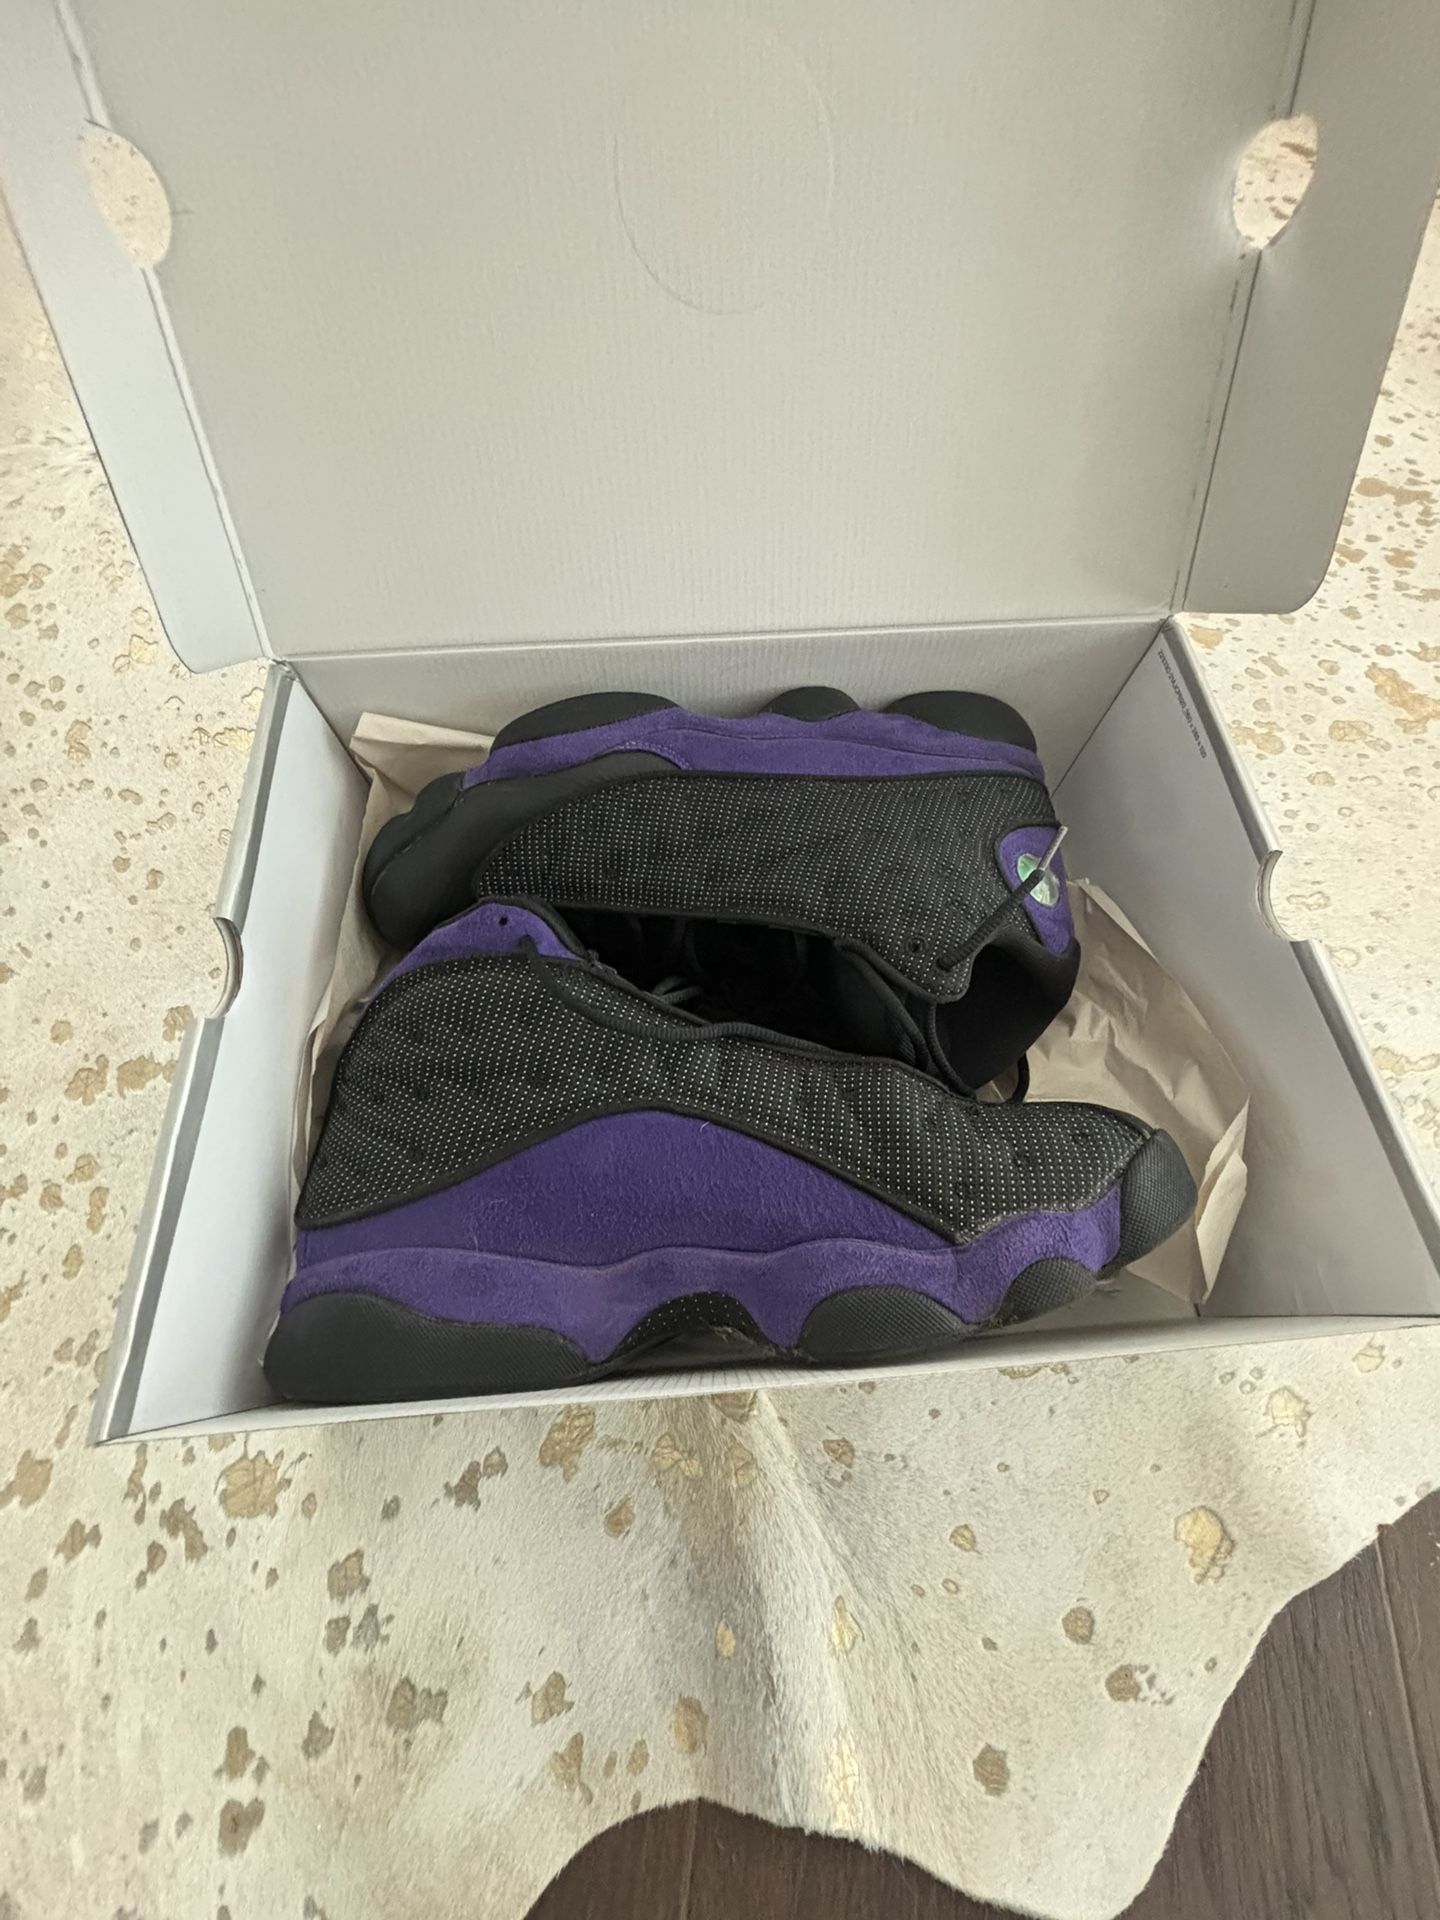 Jordan 13 Retros Court Purple 🟣 Size: 12 Men’s For Sale  $135 